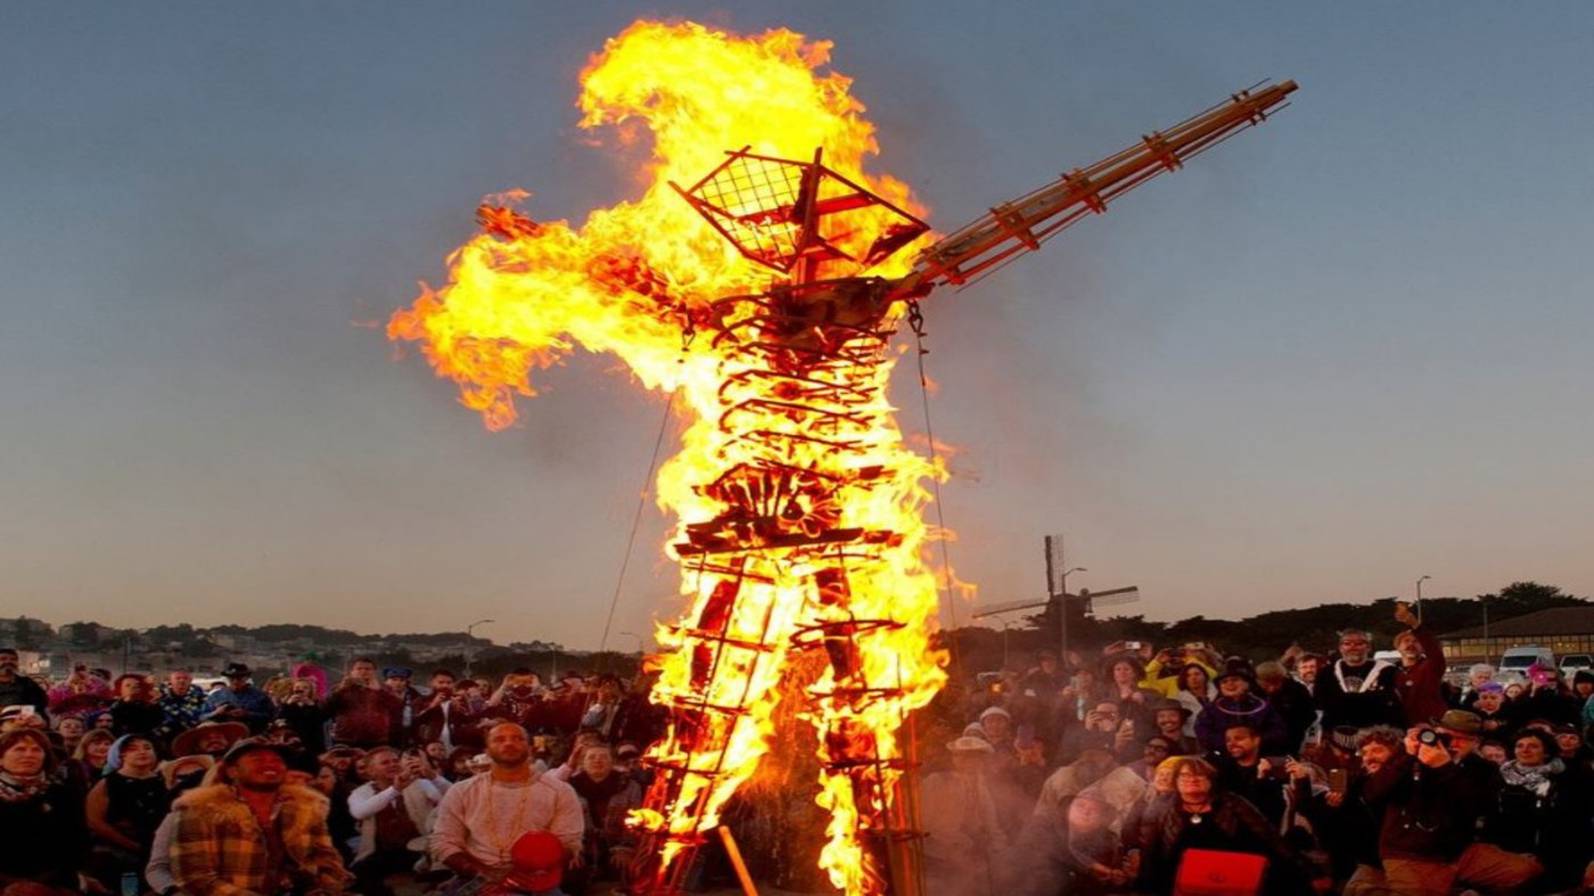 Sarah Rose Siskind's "Drug Test: Burning Man"